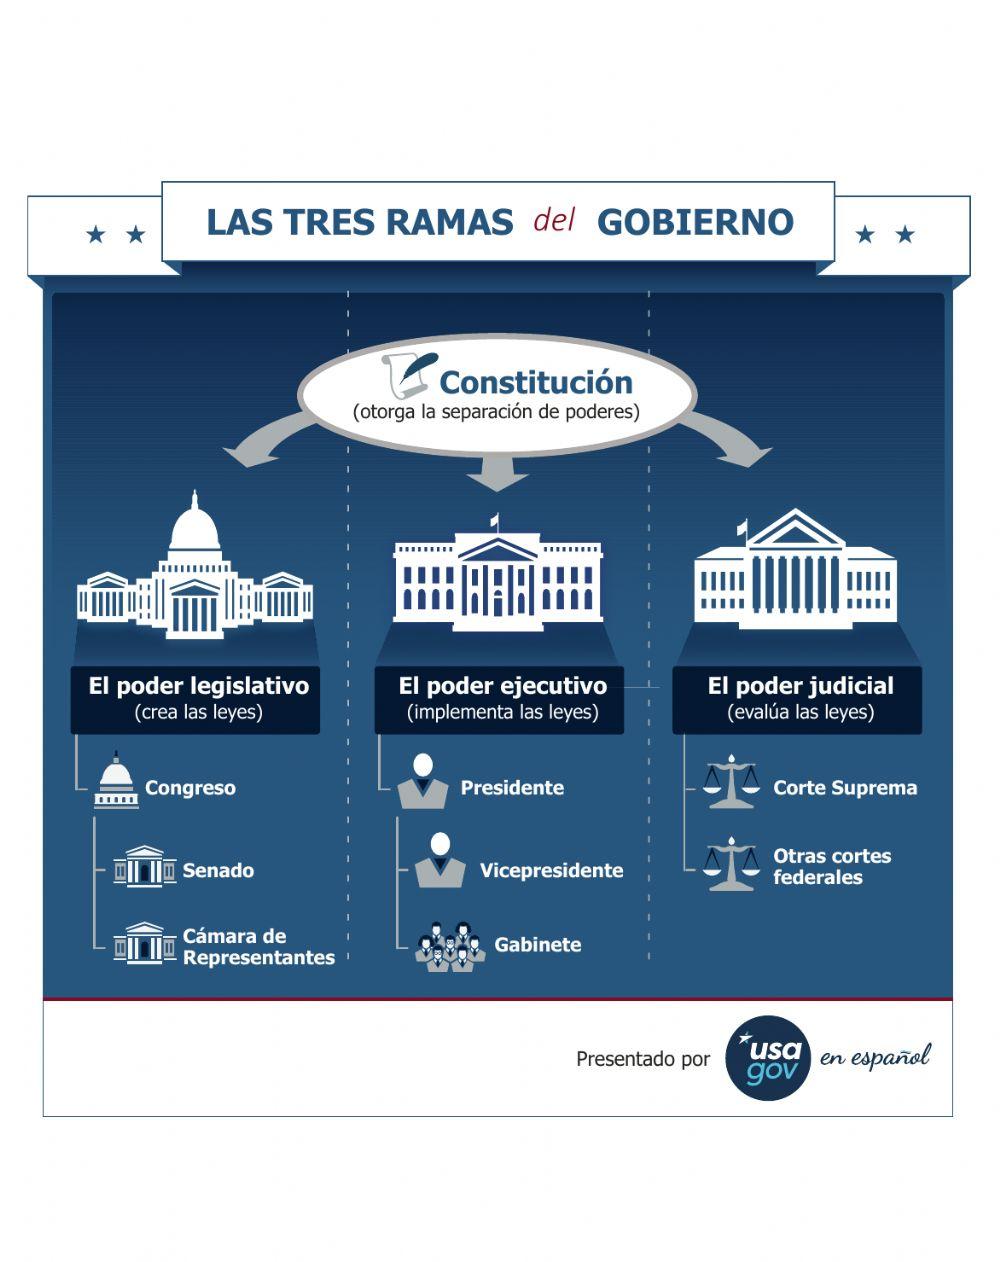 Las tres ramas del gobierno de Estados Unidos de América